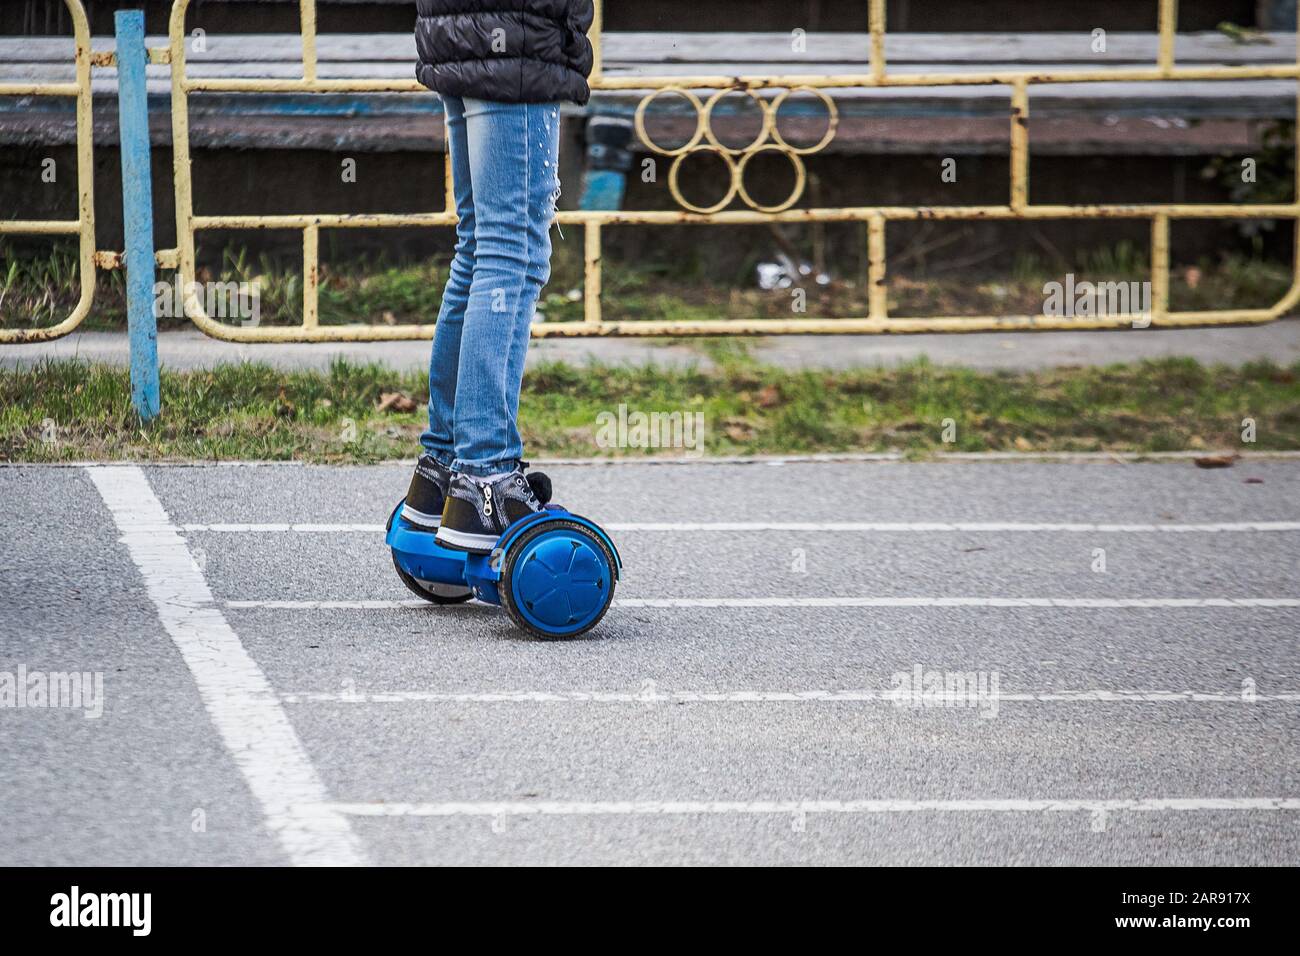 jambes de fille dans un jean déchiré qui monte sur des circuits de  gyrosboard bleus dans le stade de la ville. Planche à deux roues  auto-équilibrée ou scooter de planbord. Électrique Photo